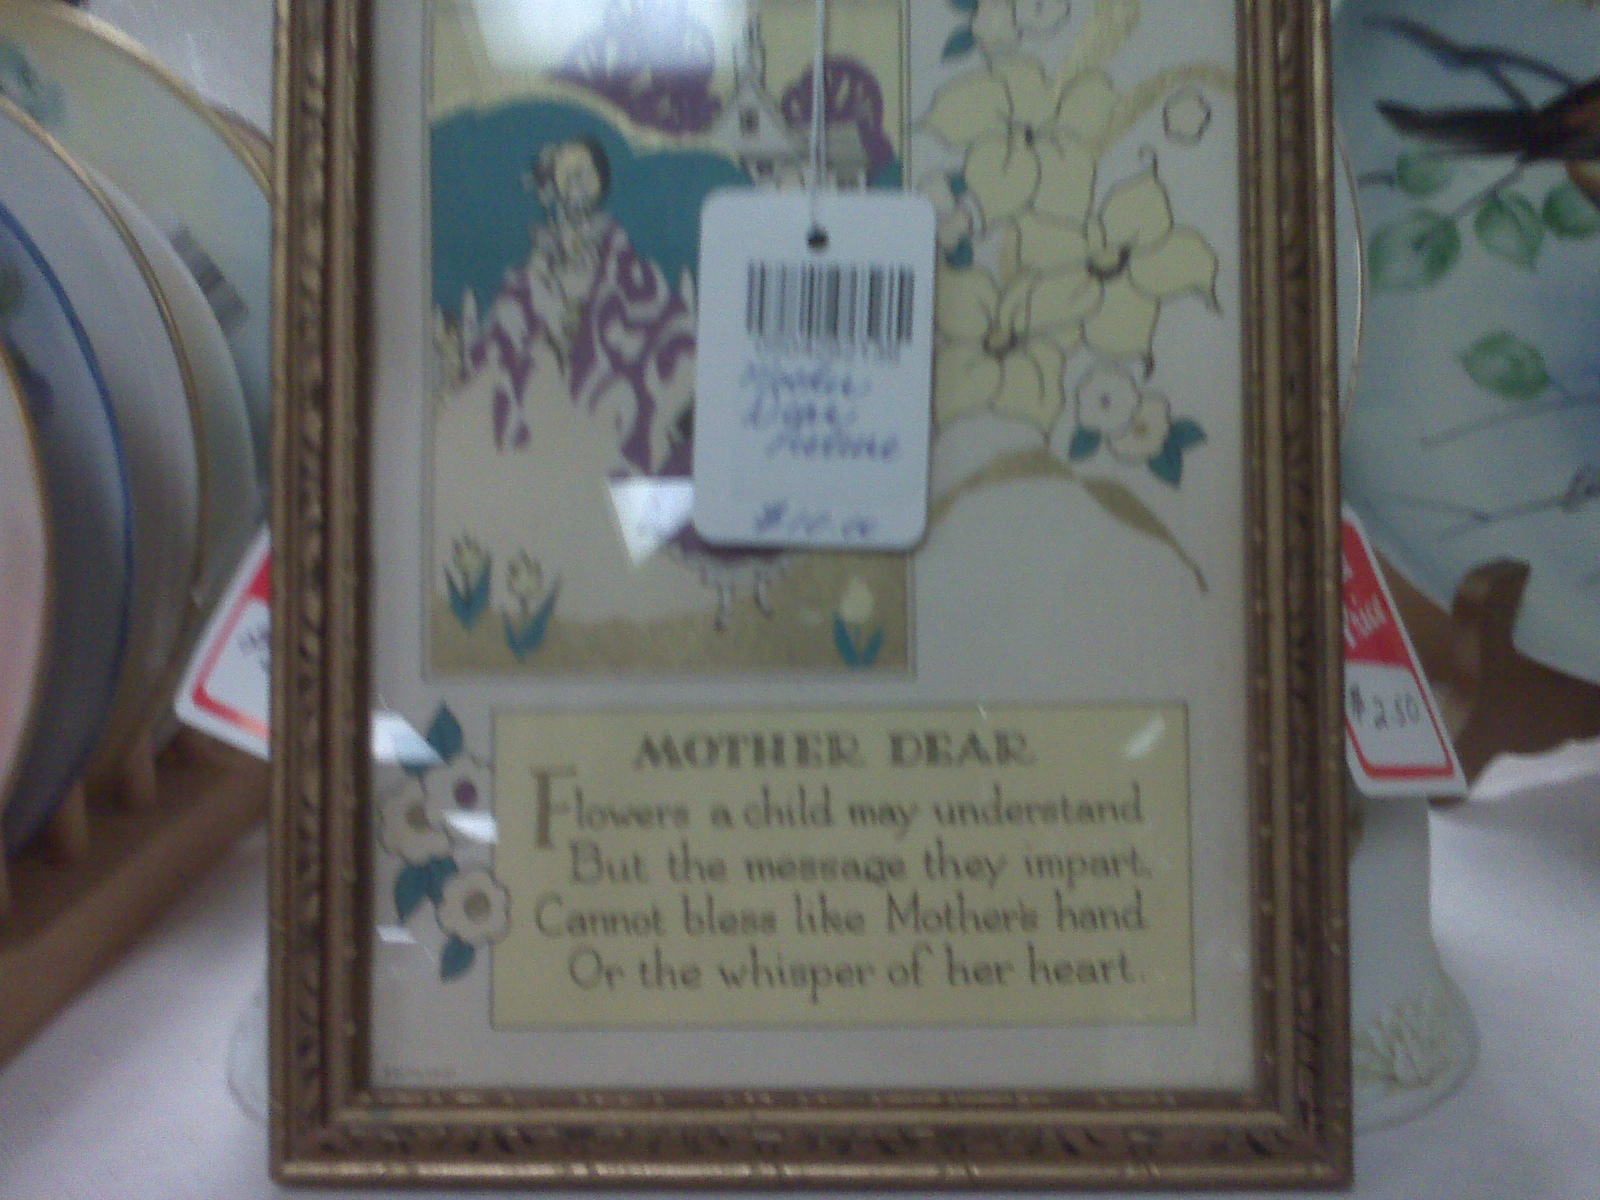 [Mother's+plaque.jpg]